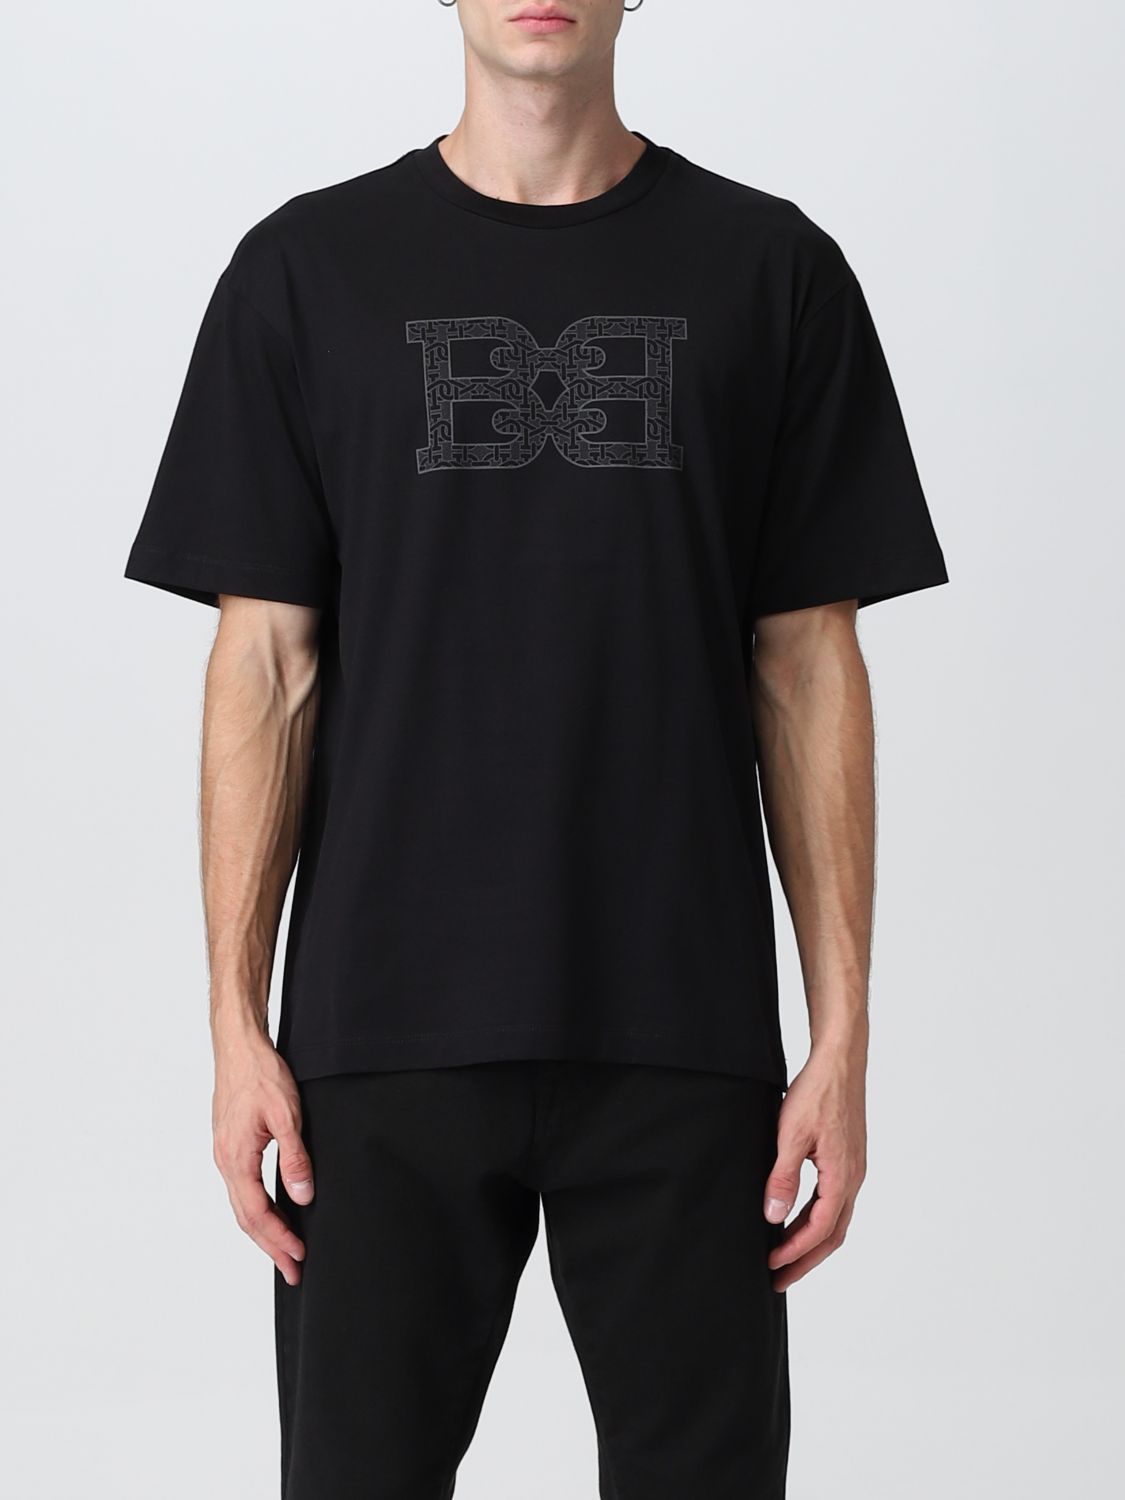 Tシャツ バリー: Tシャツ Bally メンズ ブラック 1